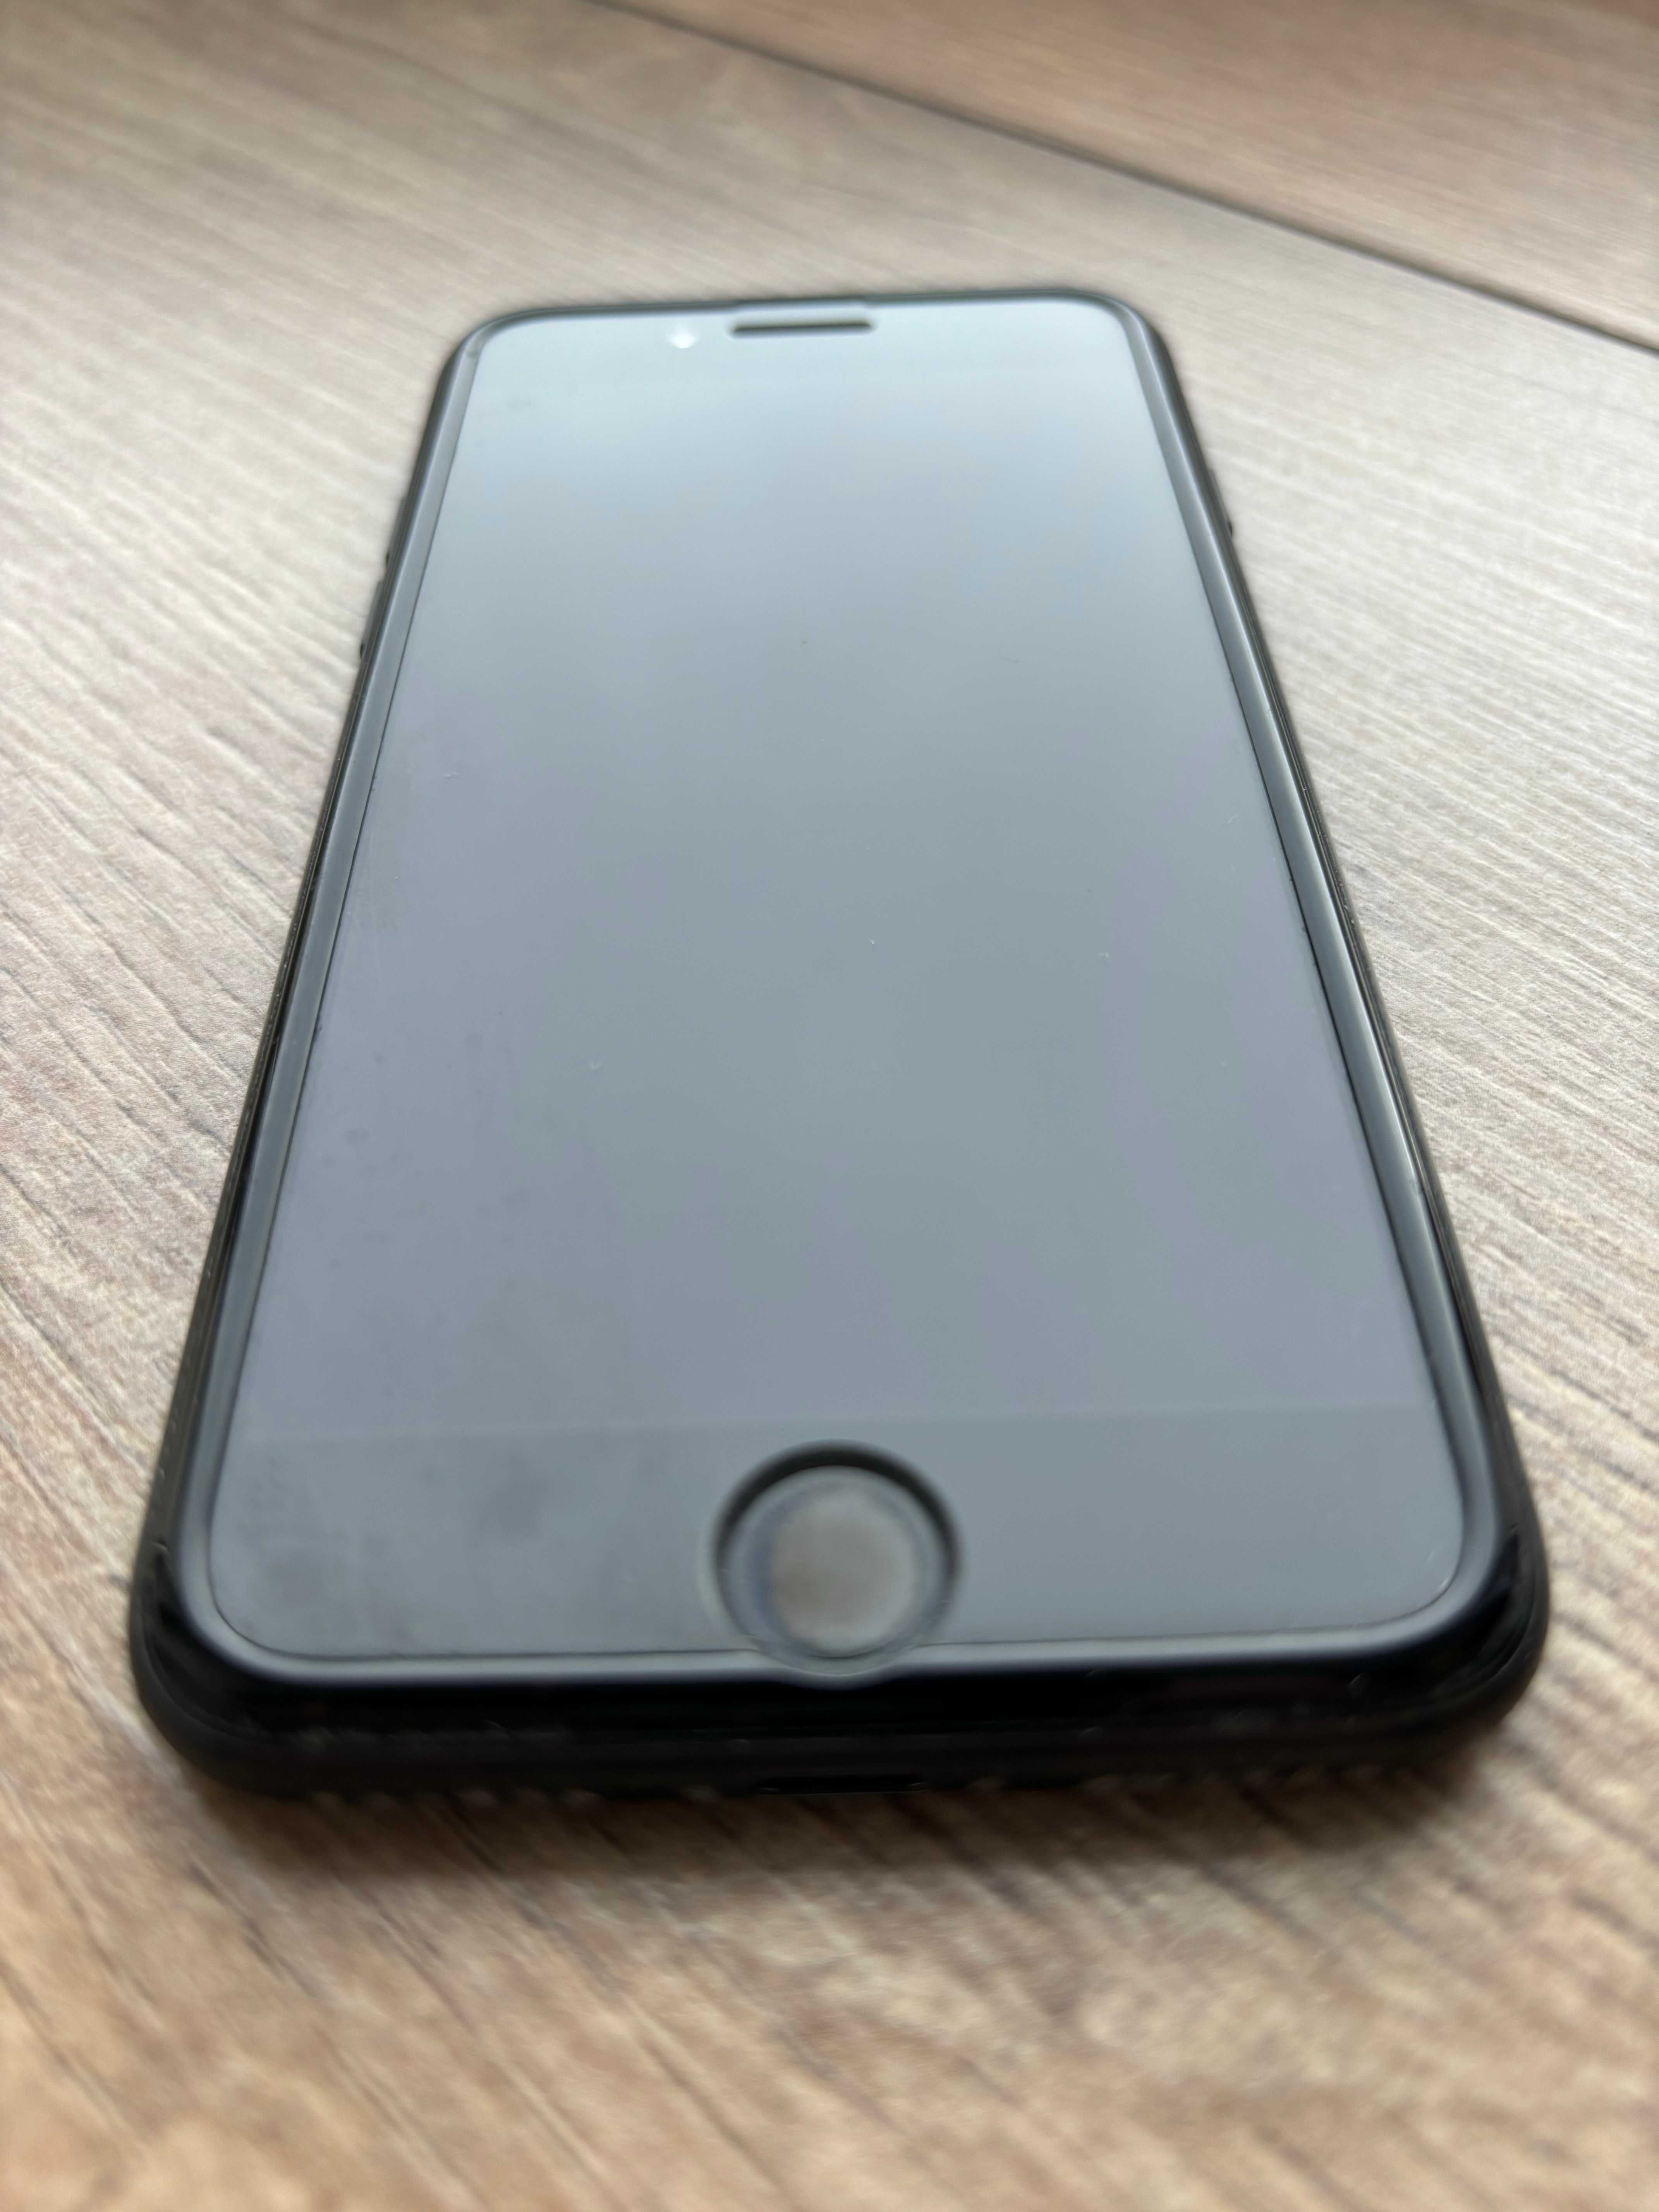 iPhone 7 Original в Идеальном состоянии!